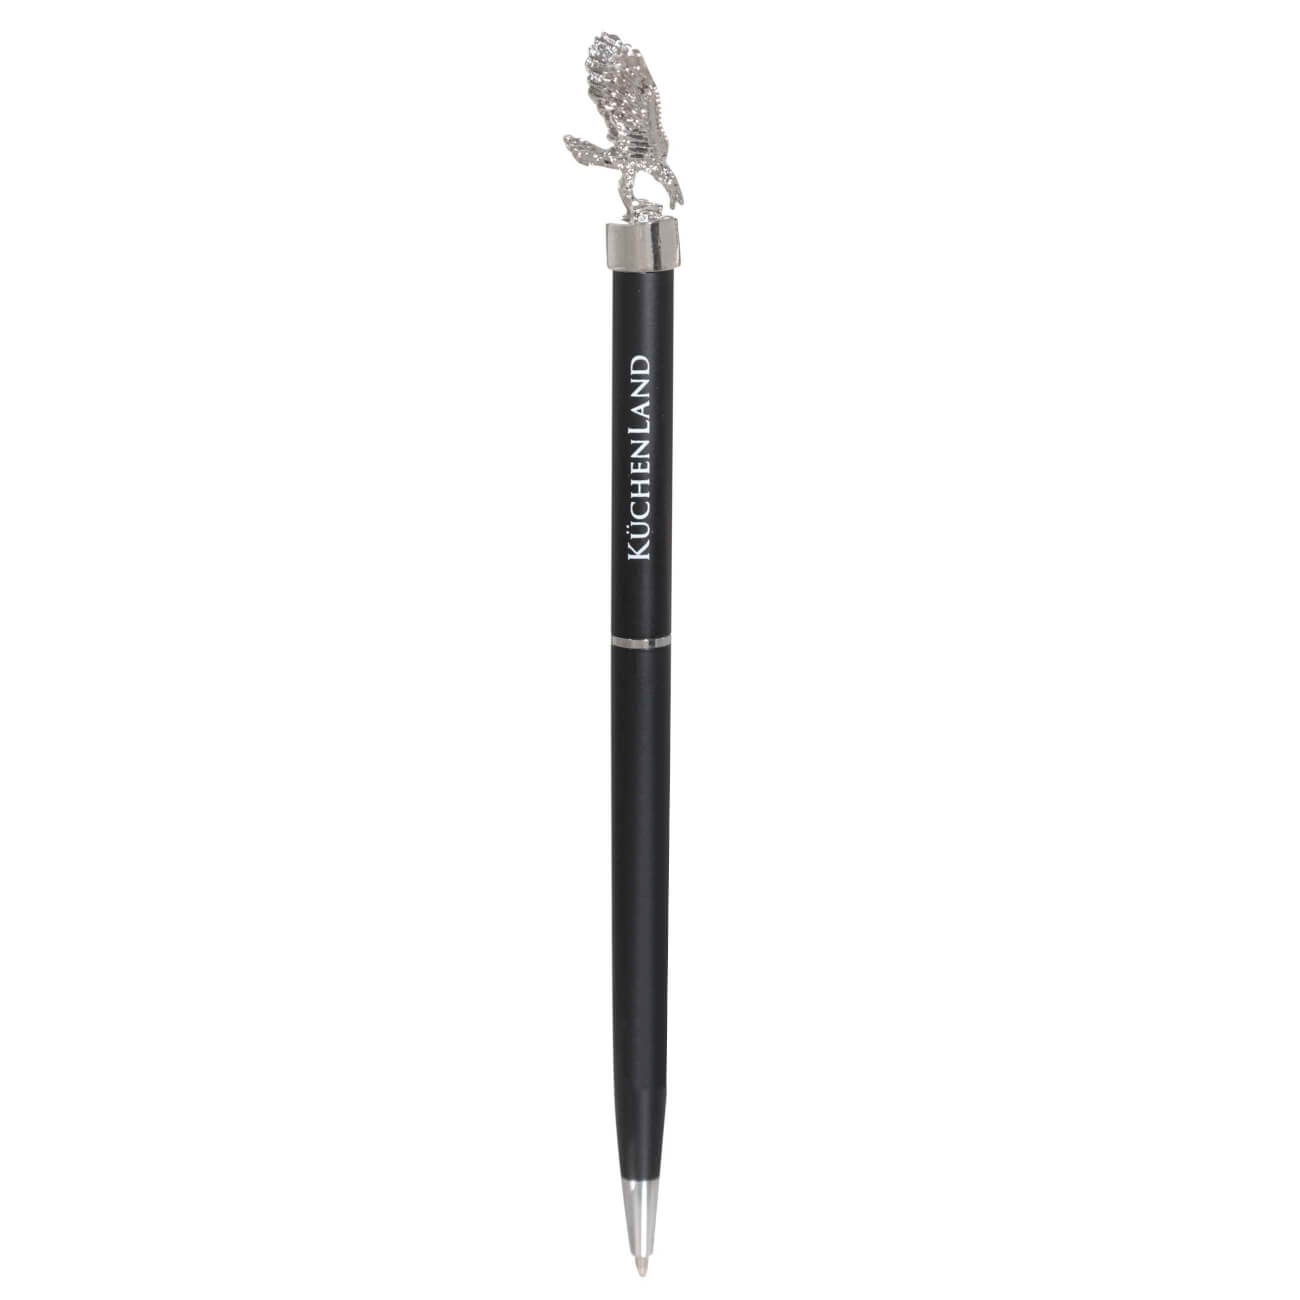 Ручка шариковая, 15 см, с фигуркой, сталь, черная, Орел, Draw figure ручка шариковая 14 см с фигуркой металл белая символ женщины draw figure